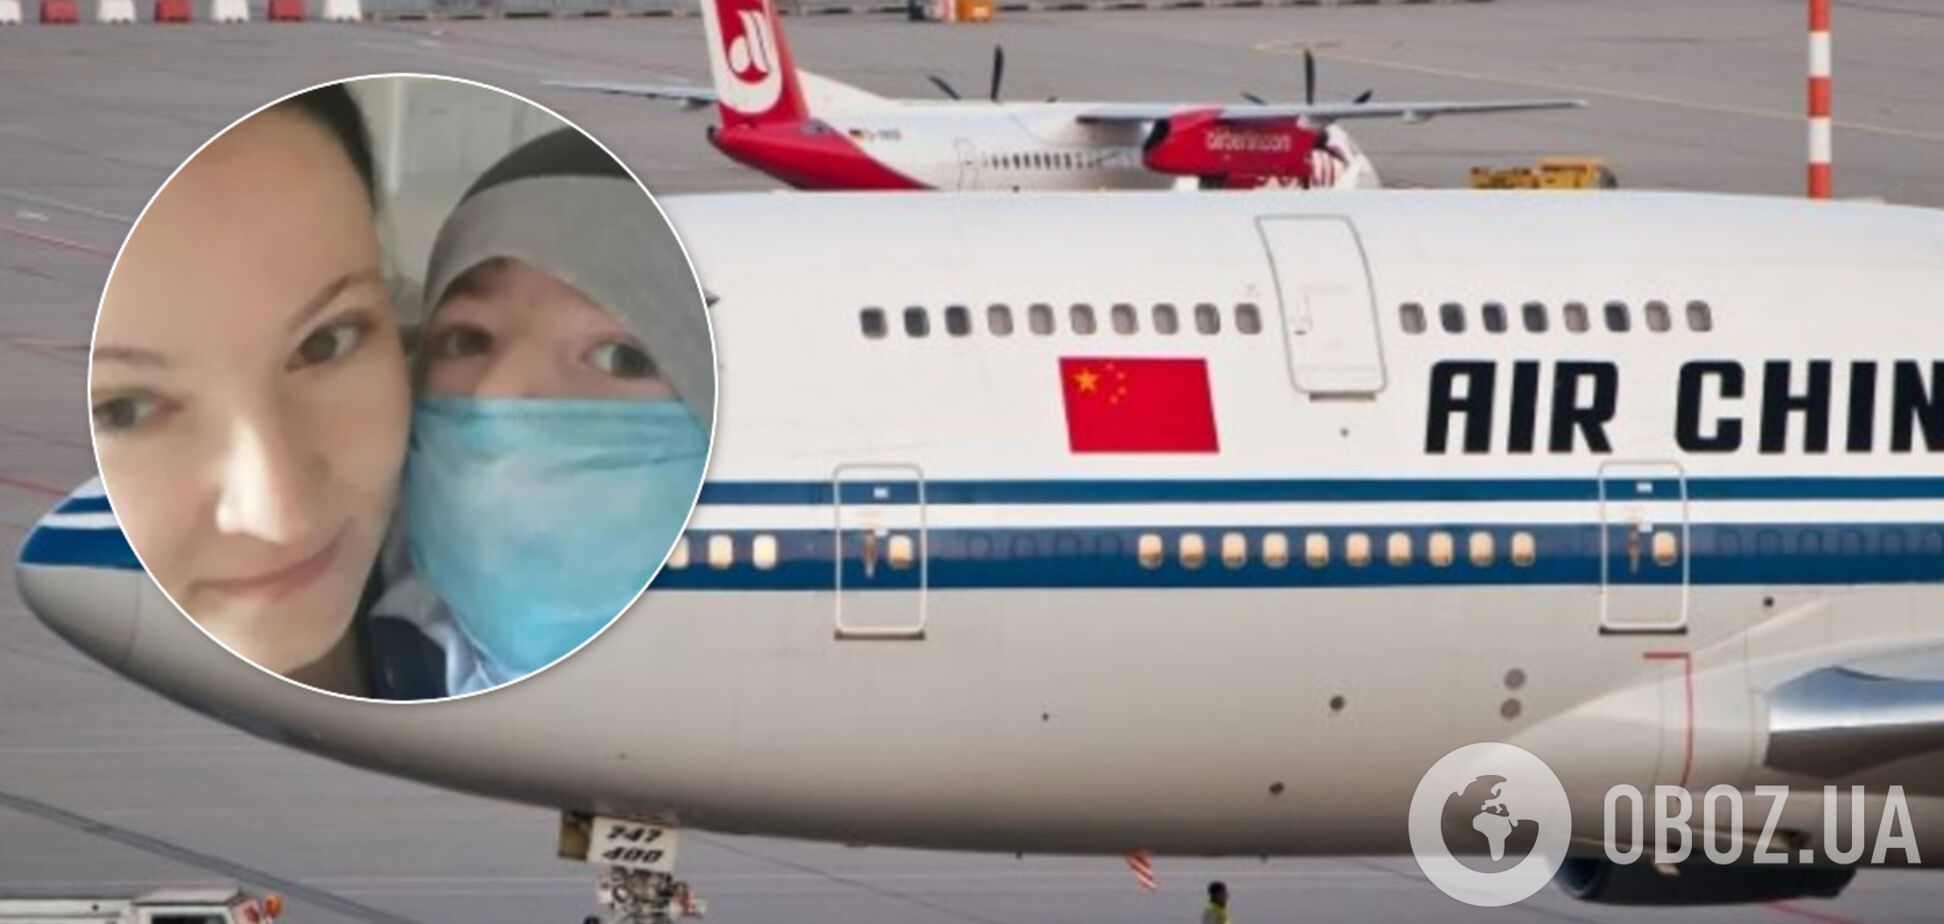 Тяжелобольного 5-летнего украинца не пустили на самолет в Китае